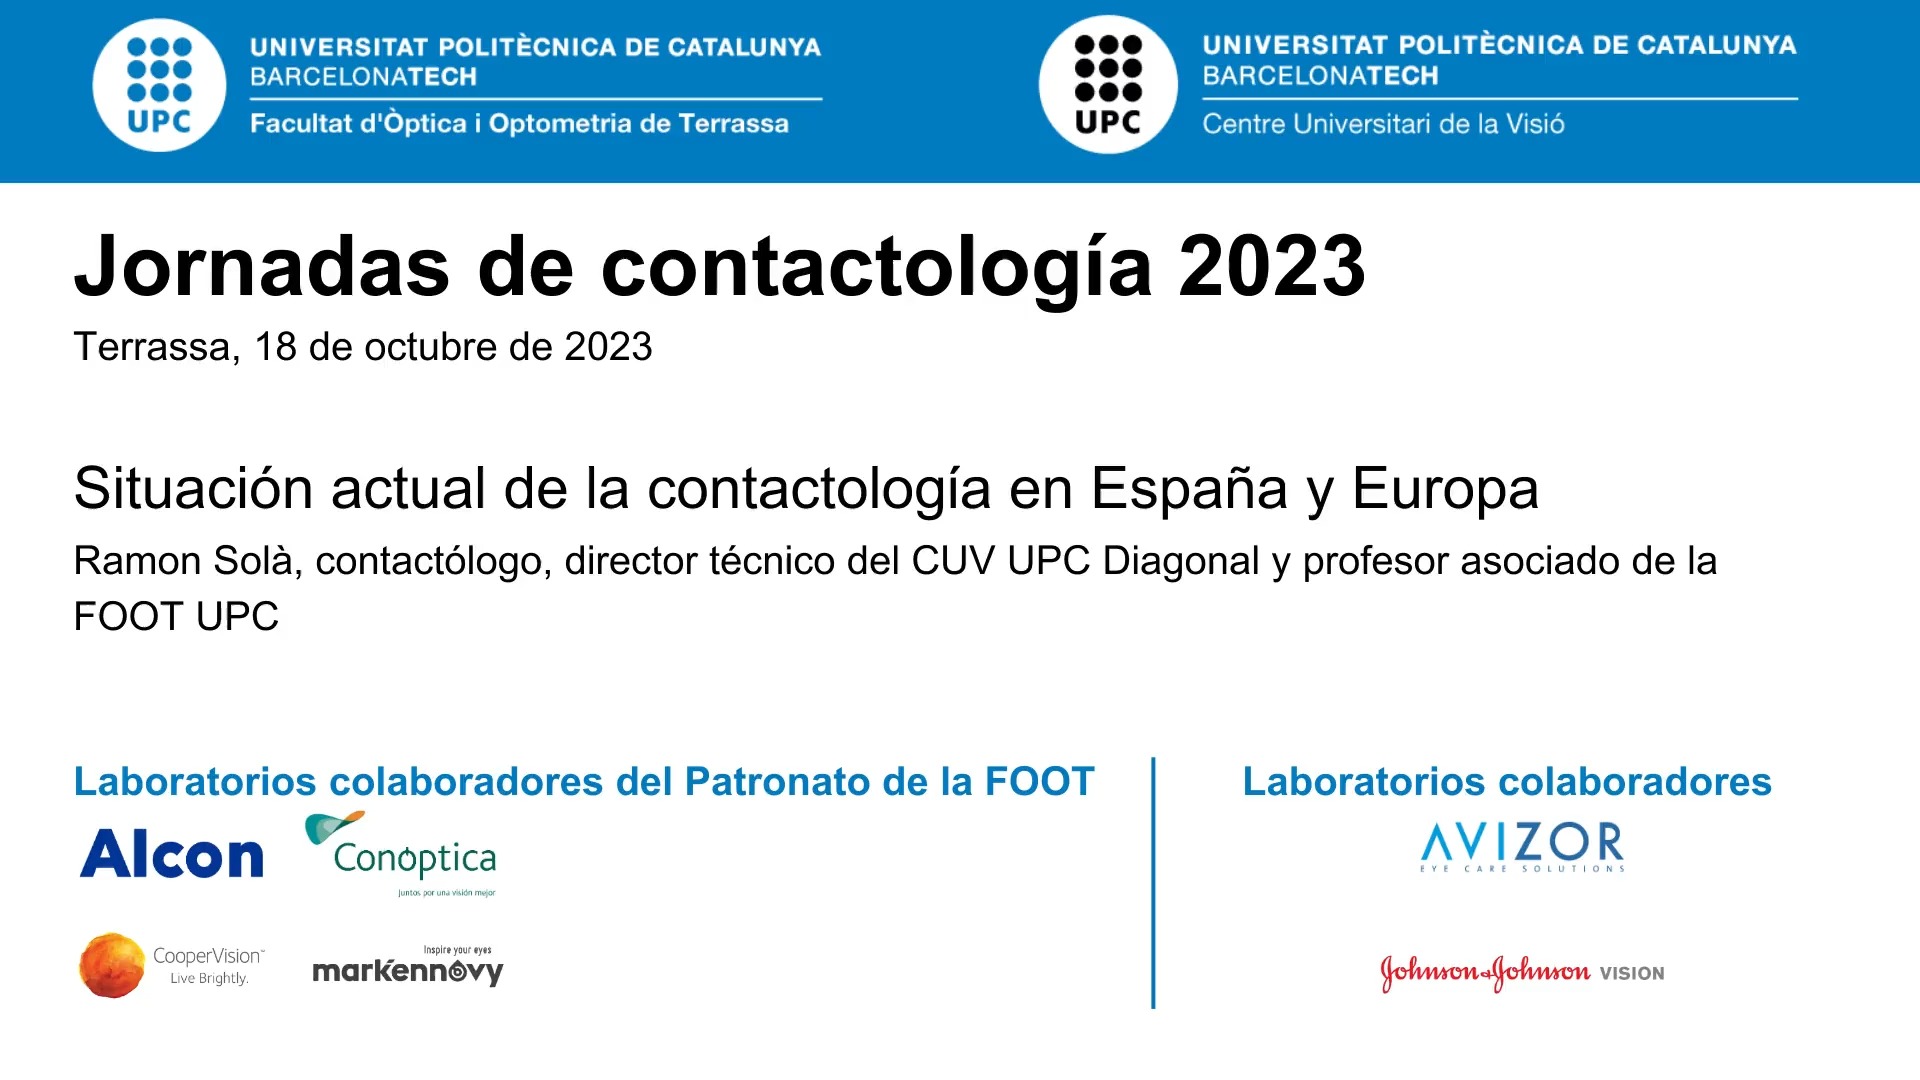  Situación actual de la contactología en España y Europa